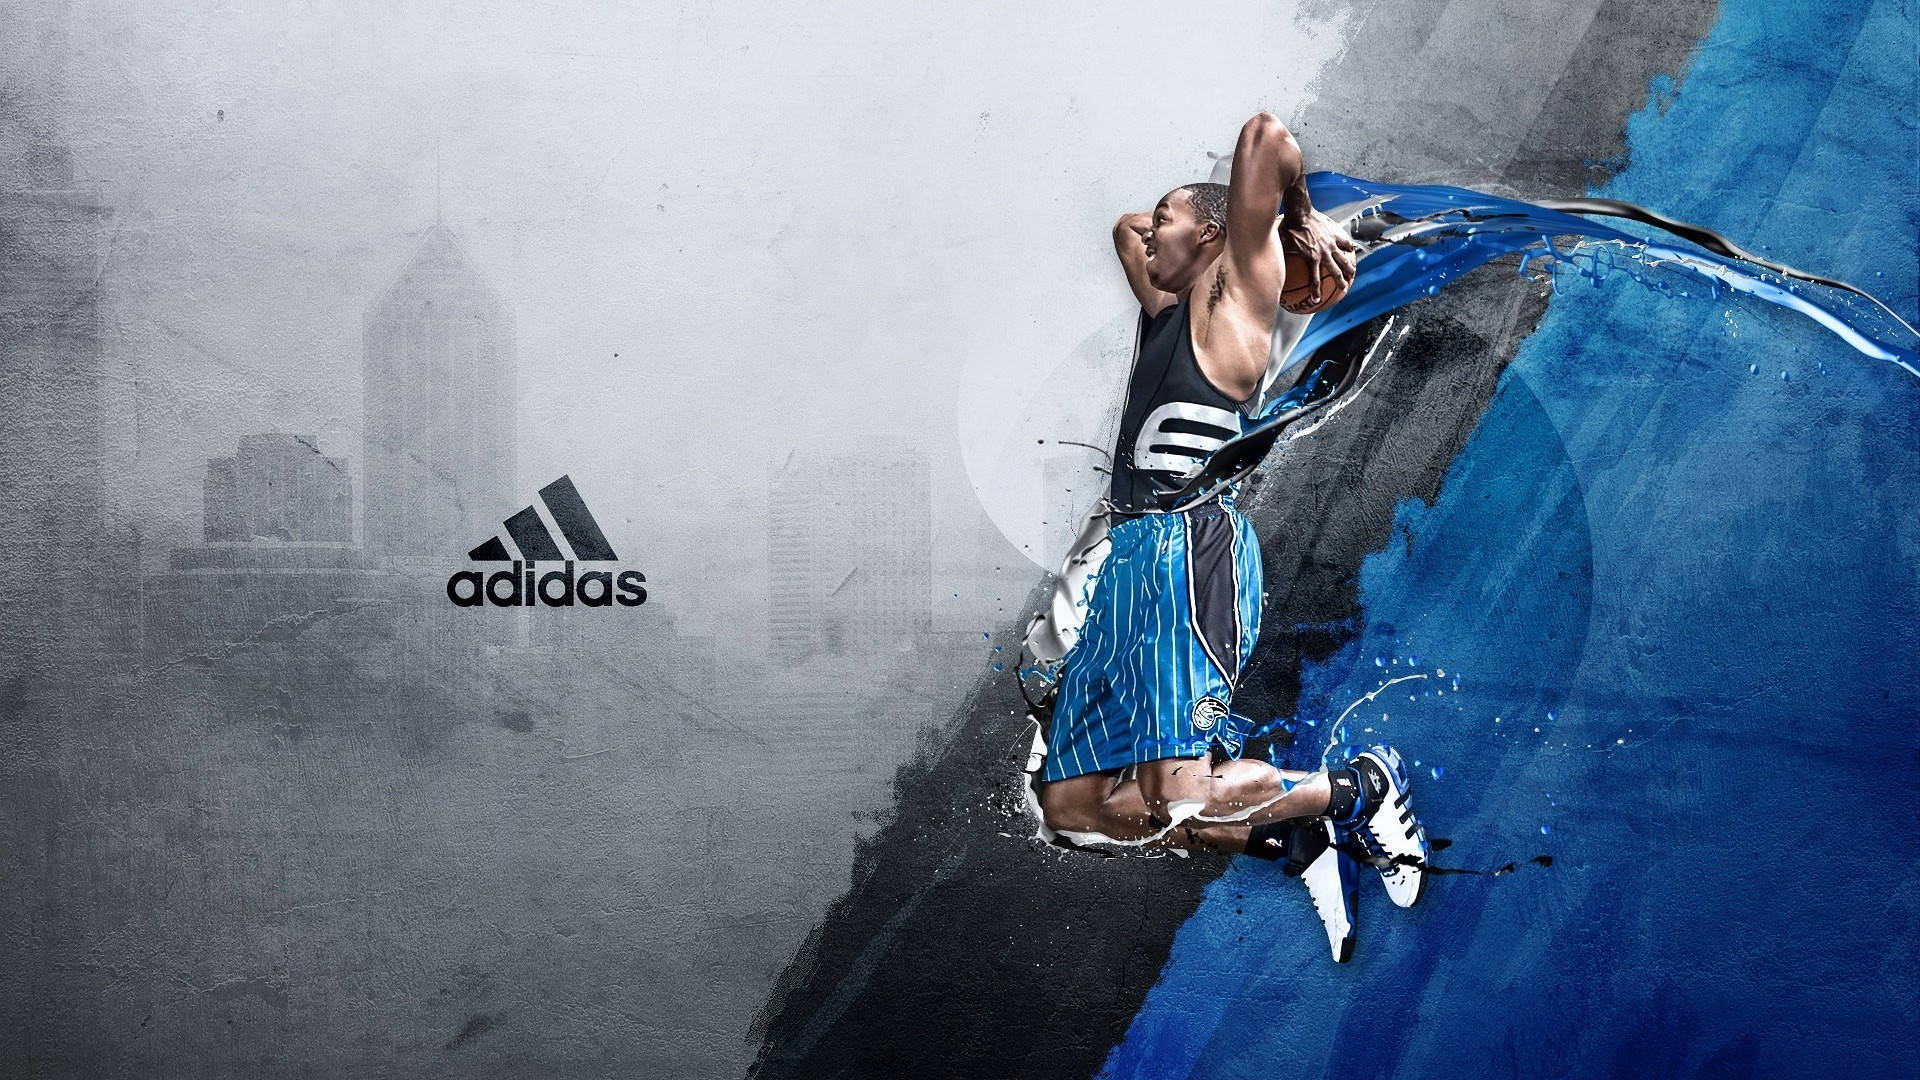 Adidas Sko HD Sports Tapet Wallpaper